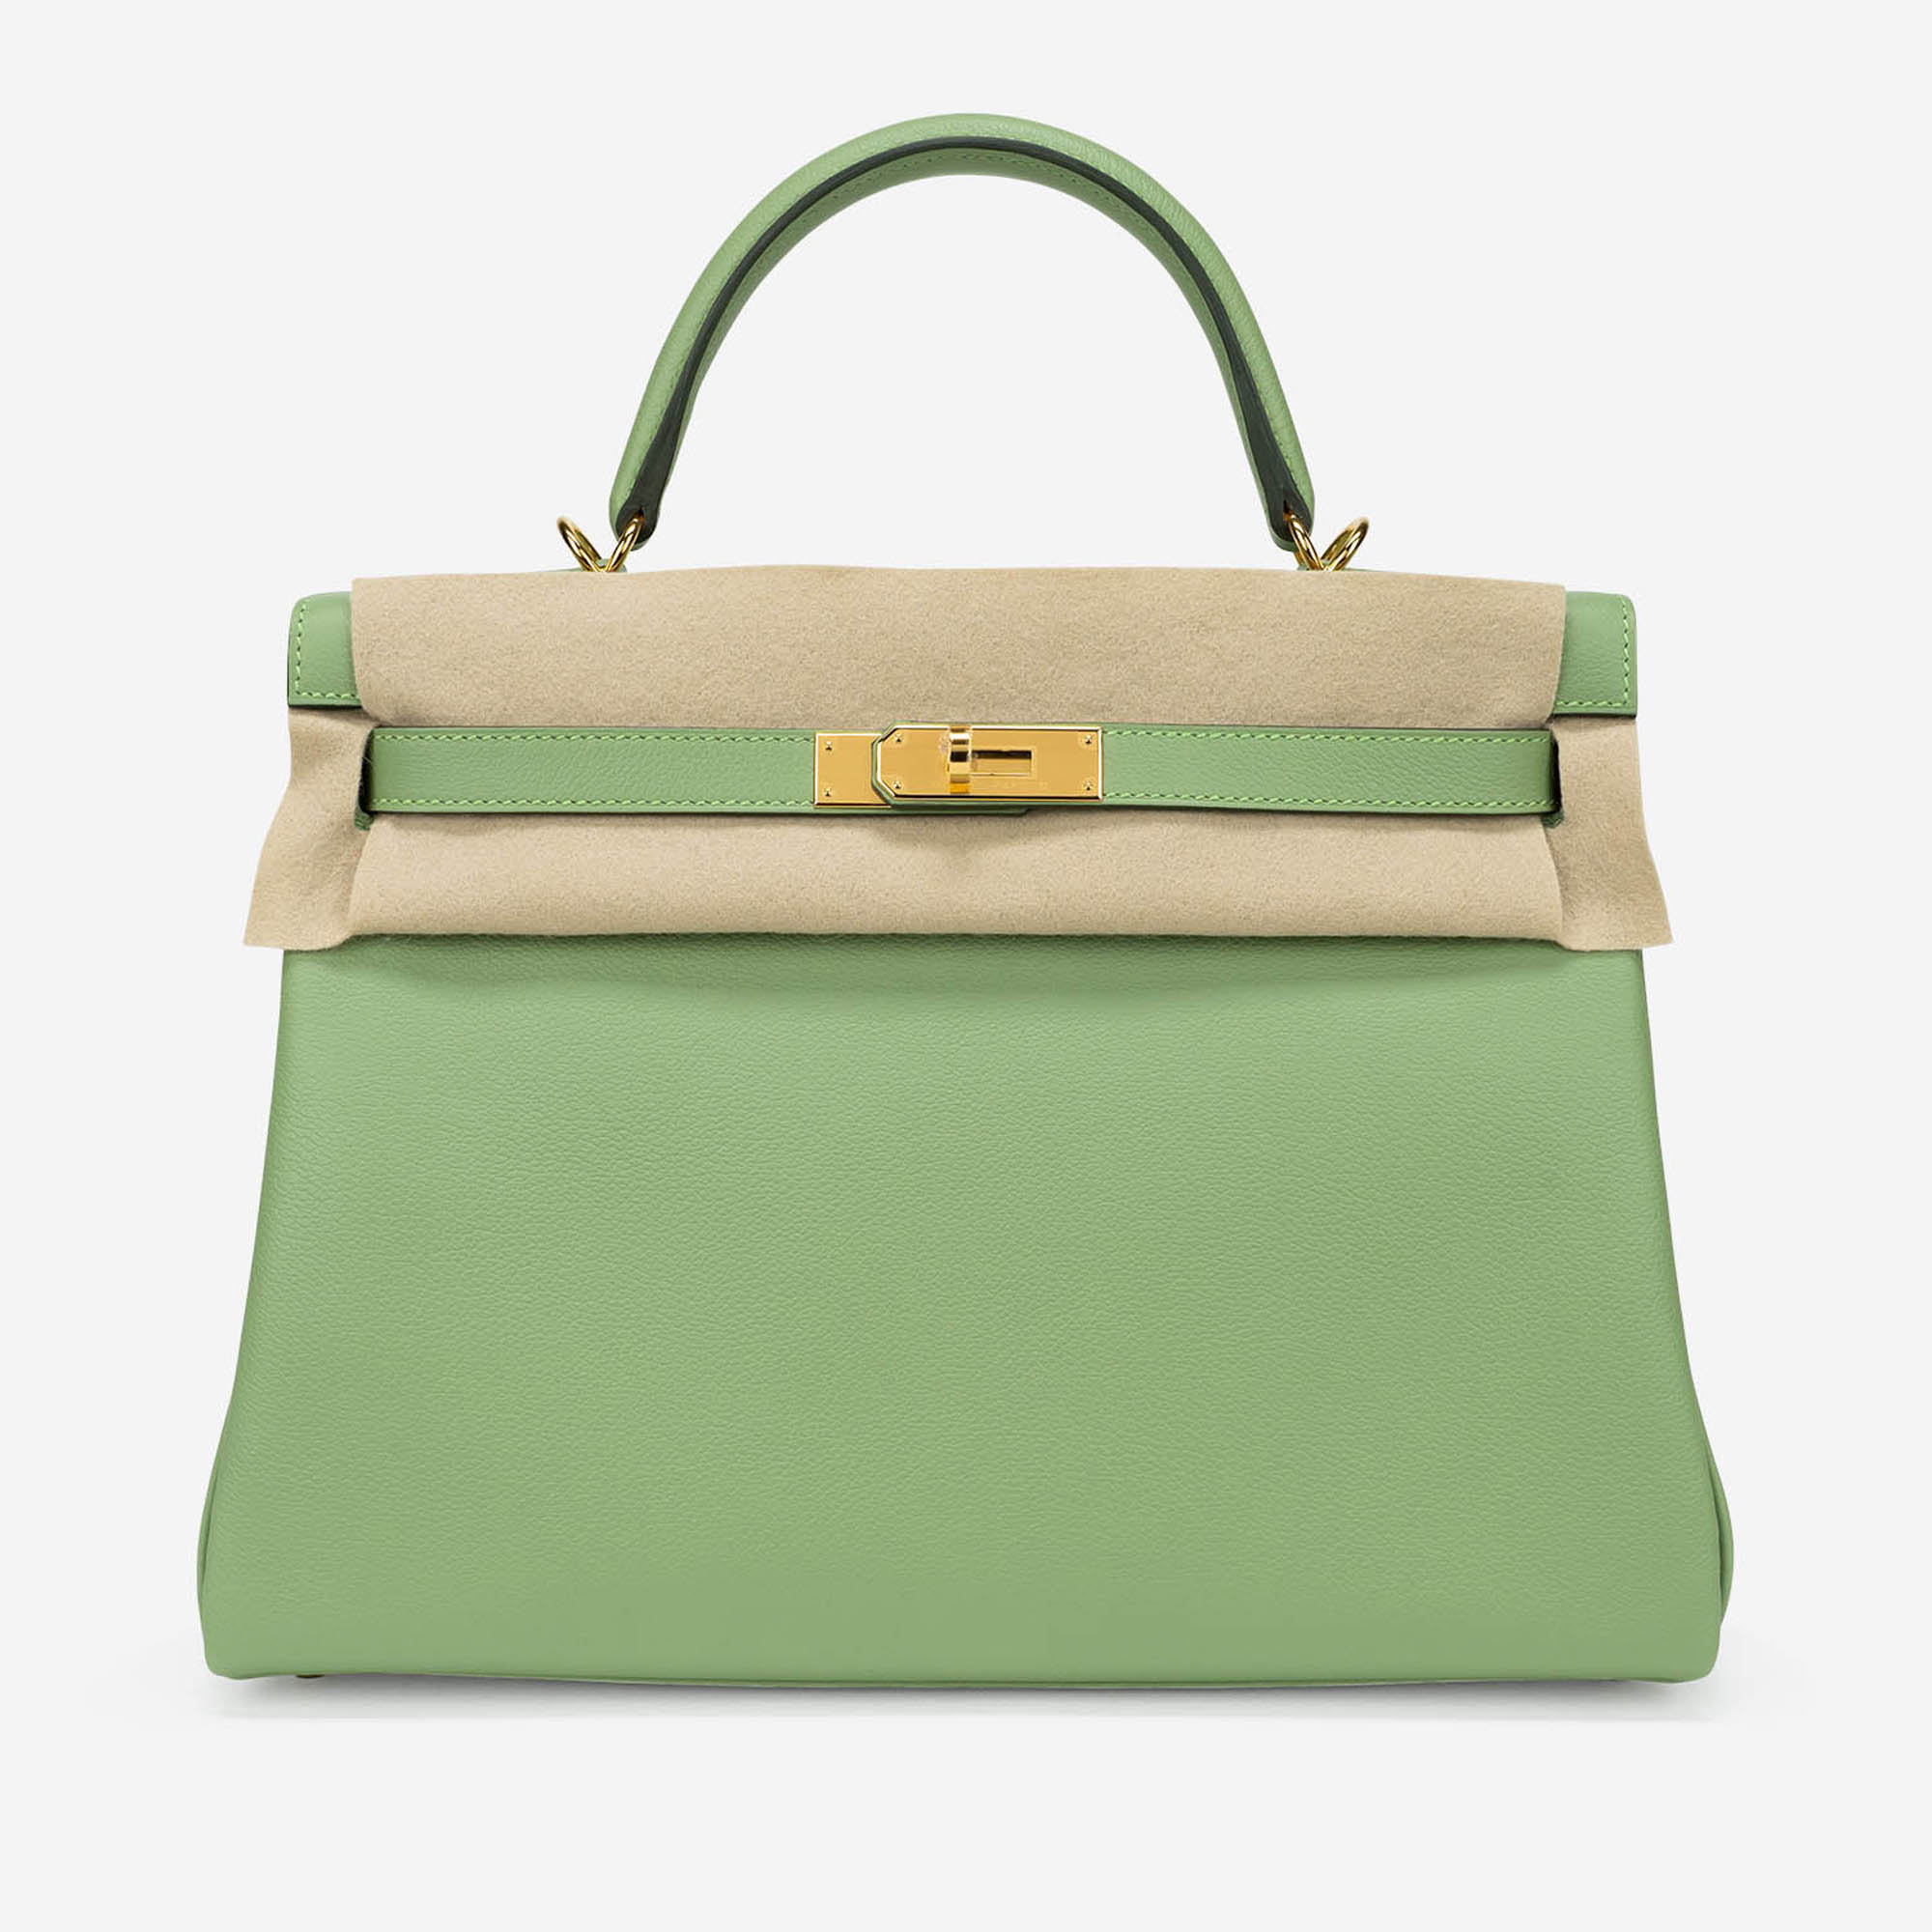 Gebrauchte Hermès Tasche Kelly 32 Evercolor Vert Criquet Grün | Verkaufen Sie Ihre Designer-Tasche auf Saclab.com